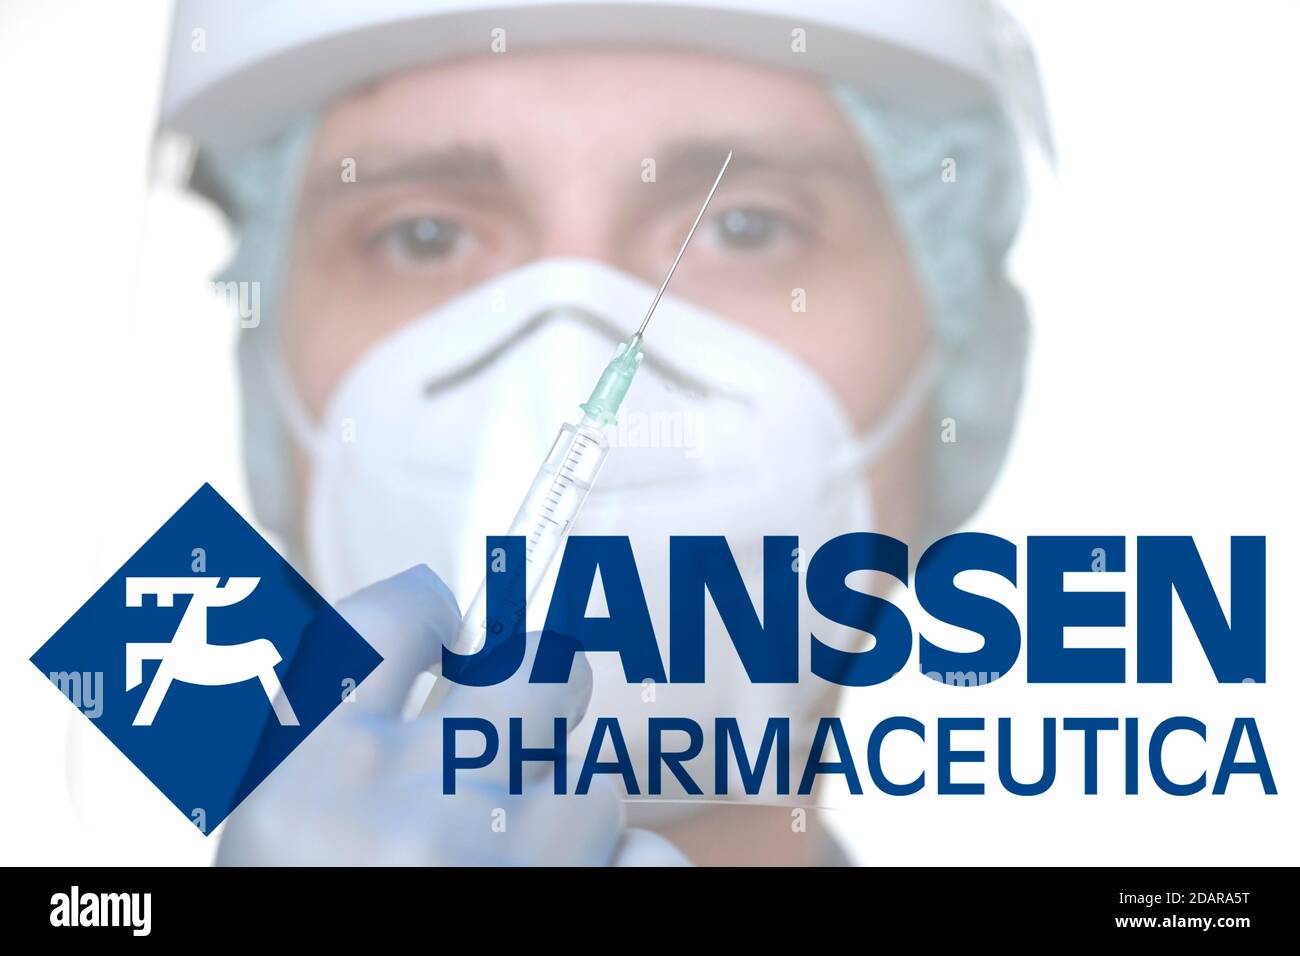 Image symbole vaccin Corona de JANSSEN PHARMACEUTICA, homme avec seringue, crise corona, Bade-Wurtemberg, Allemagne Banque D'Images